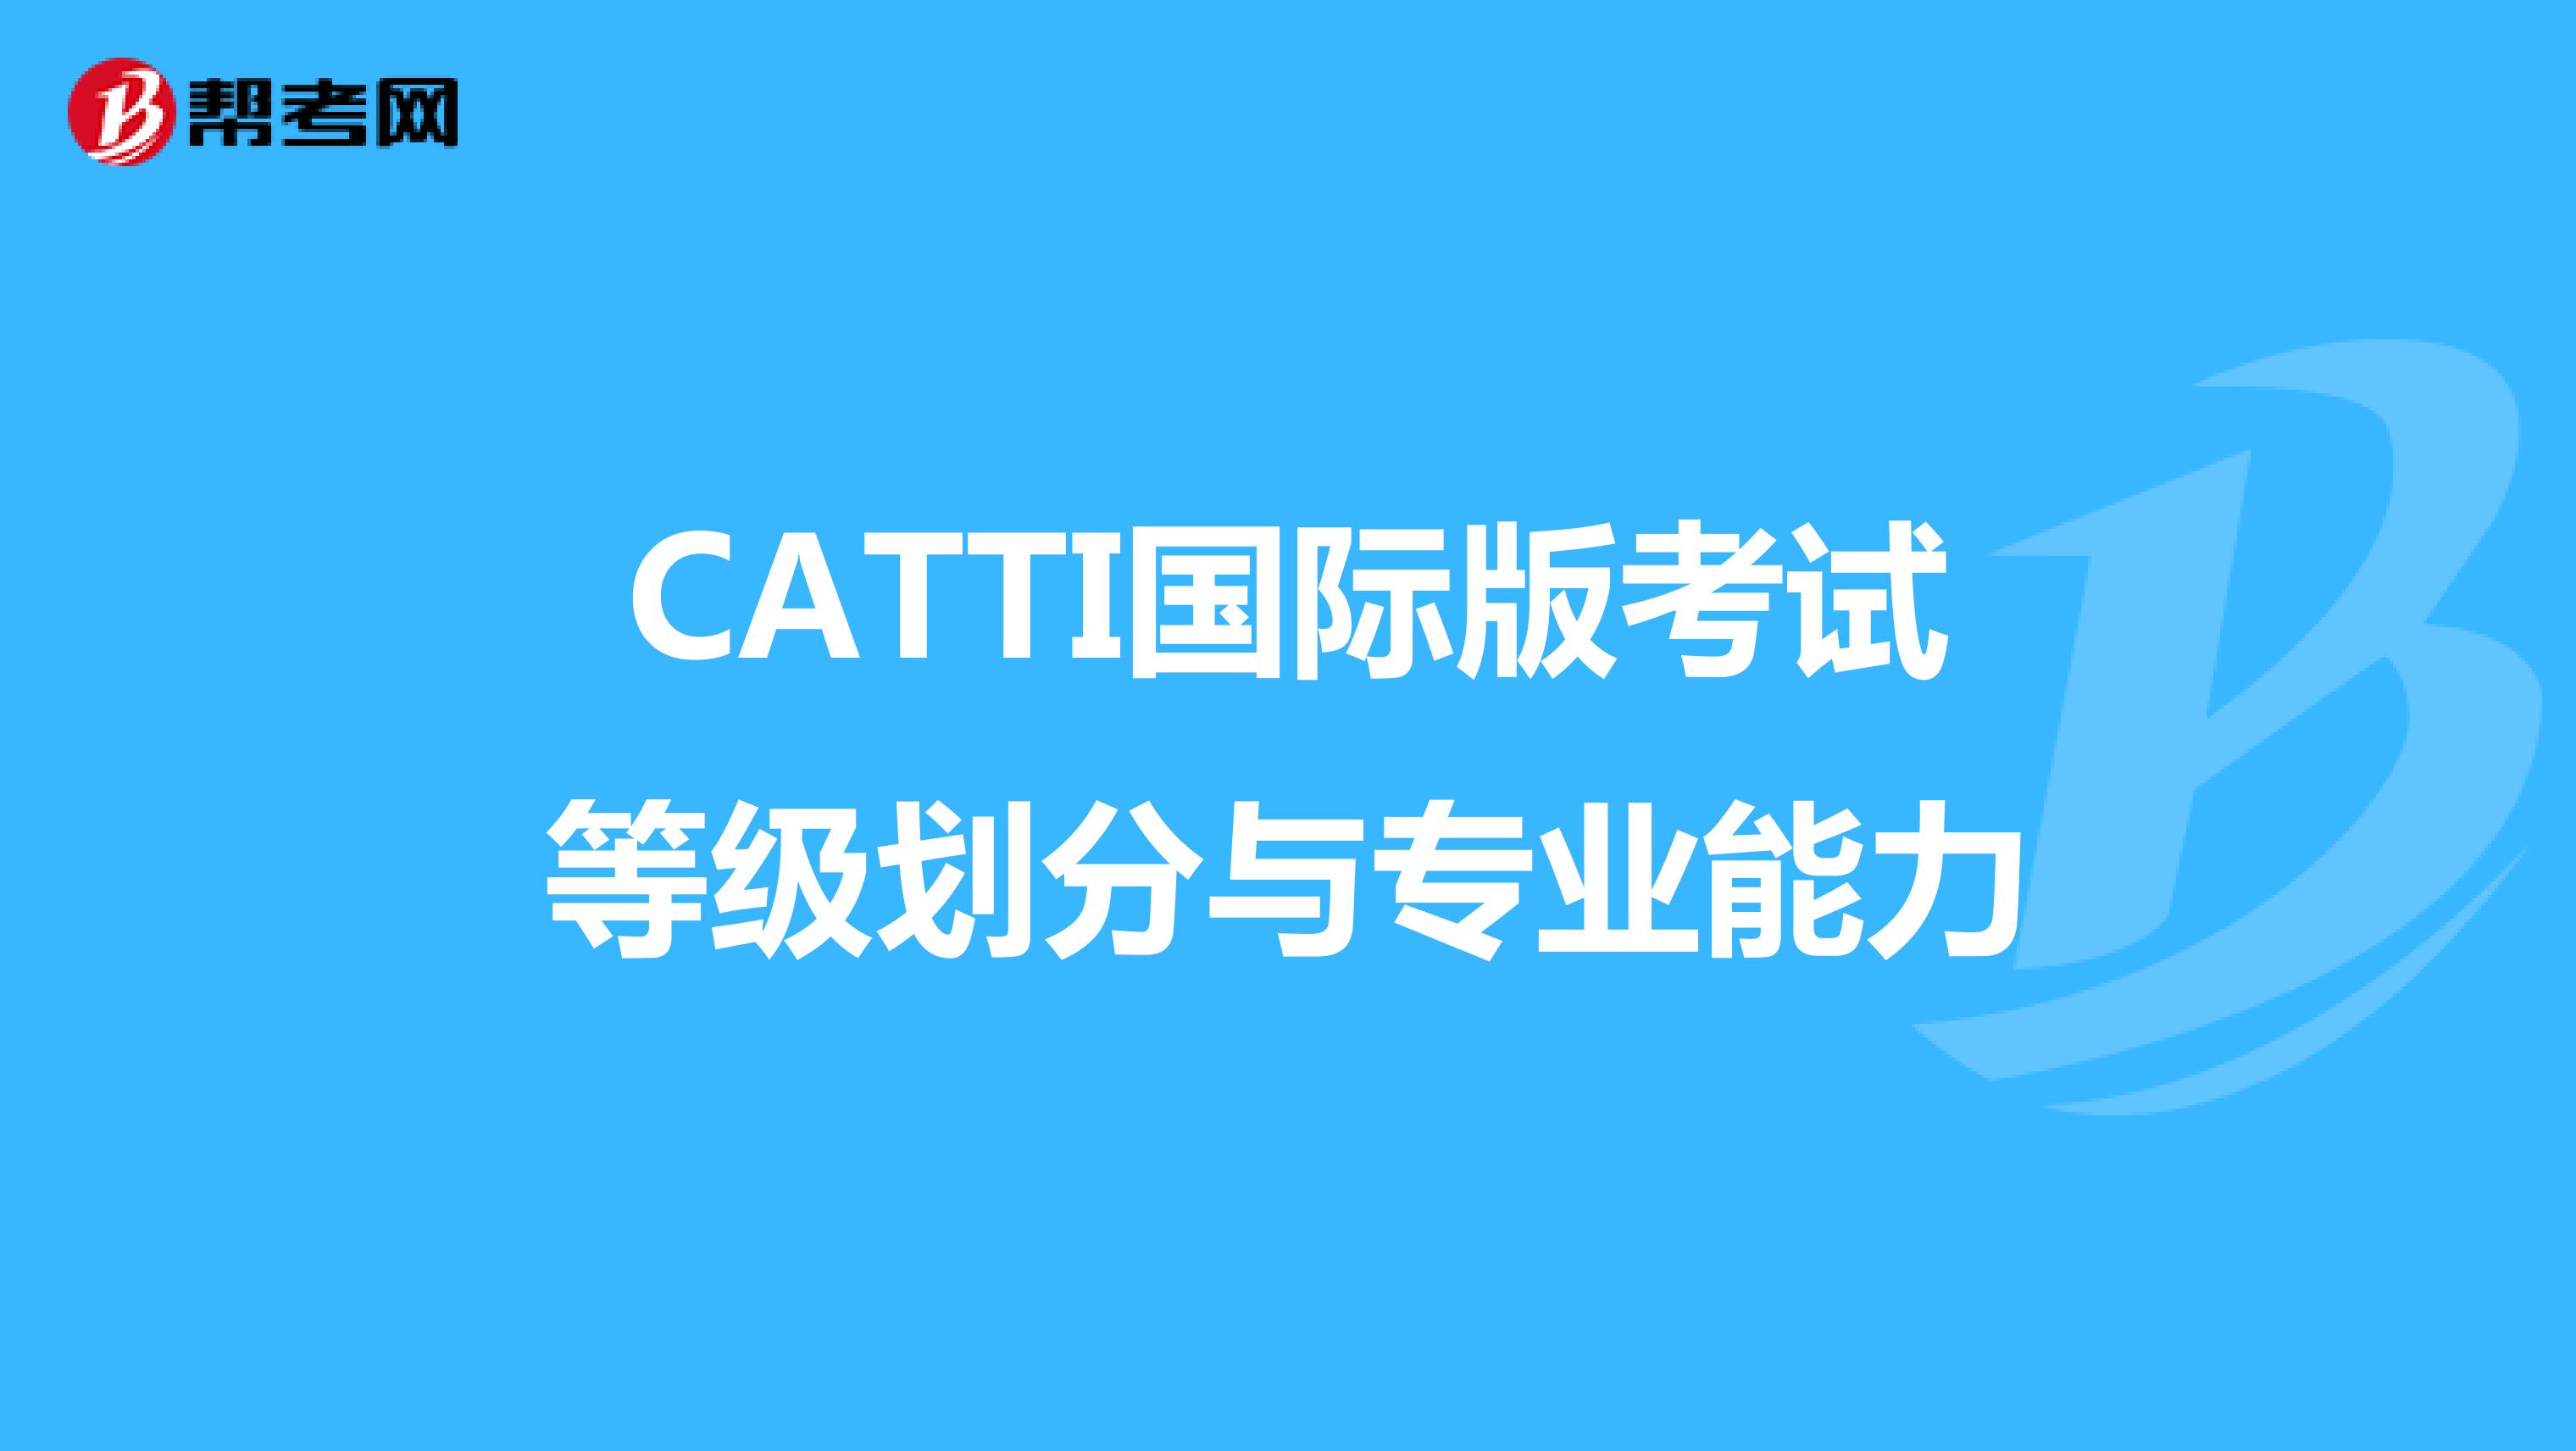 CATTI国际版考试等级划分与专业能力